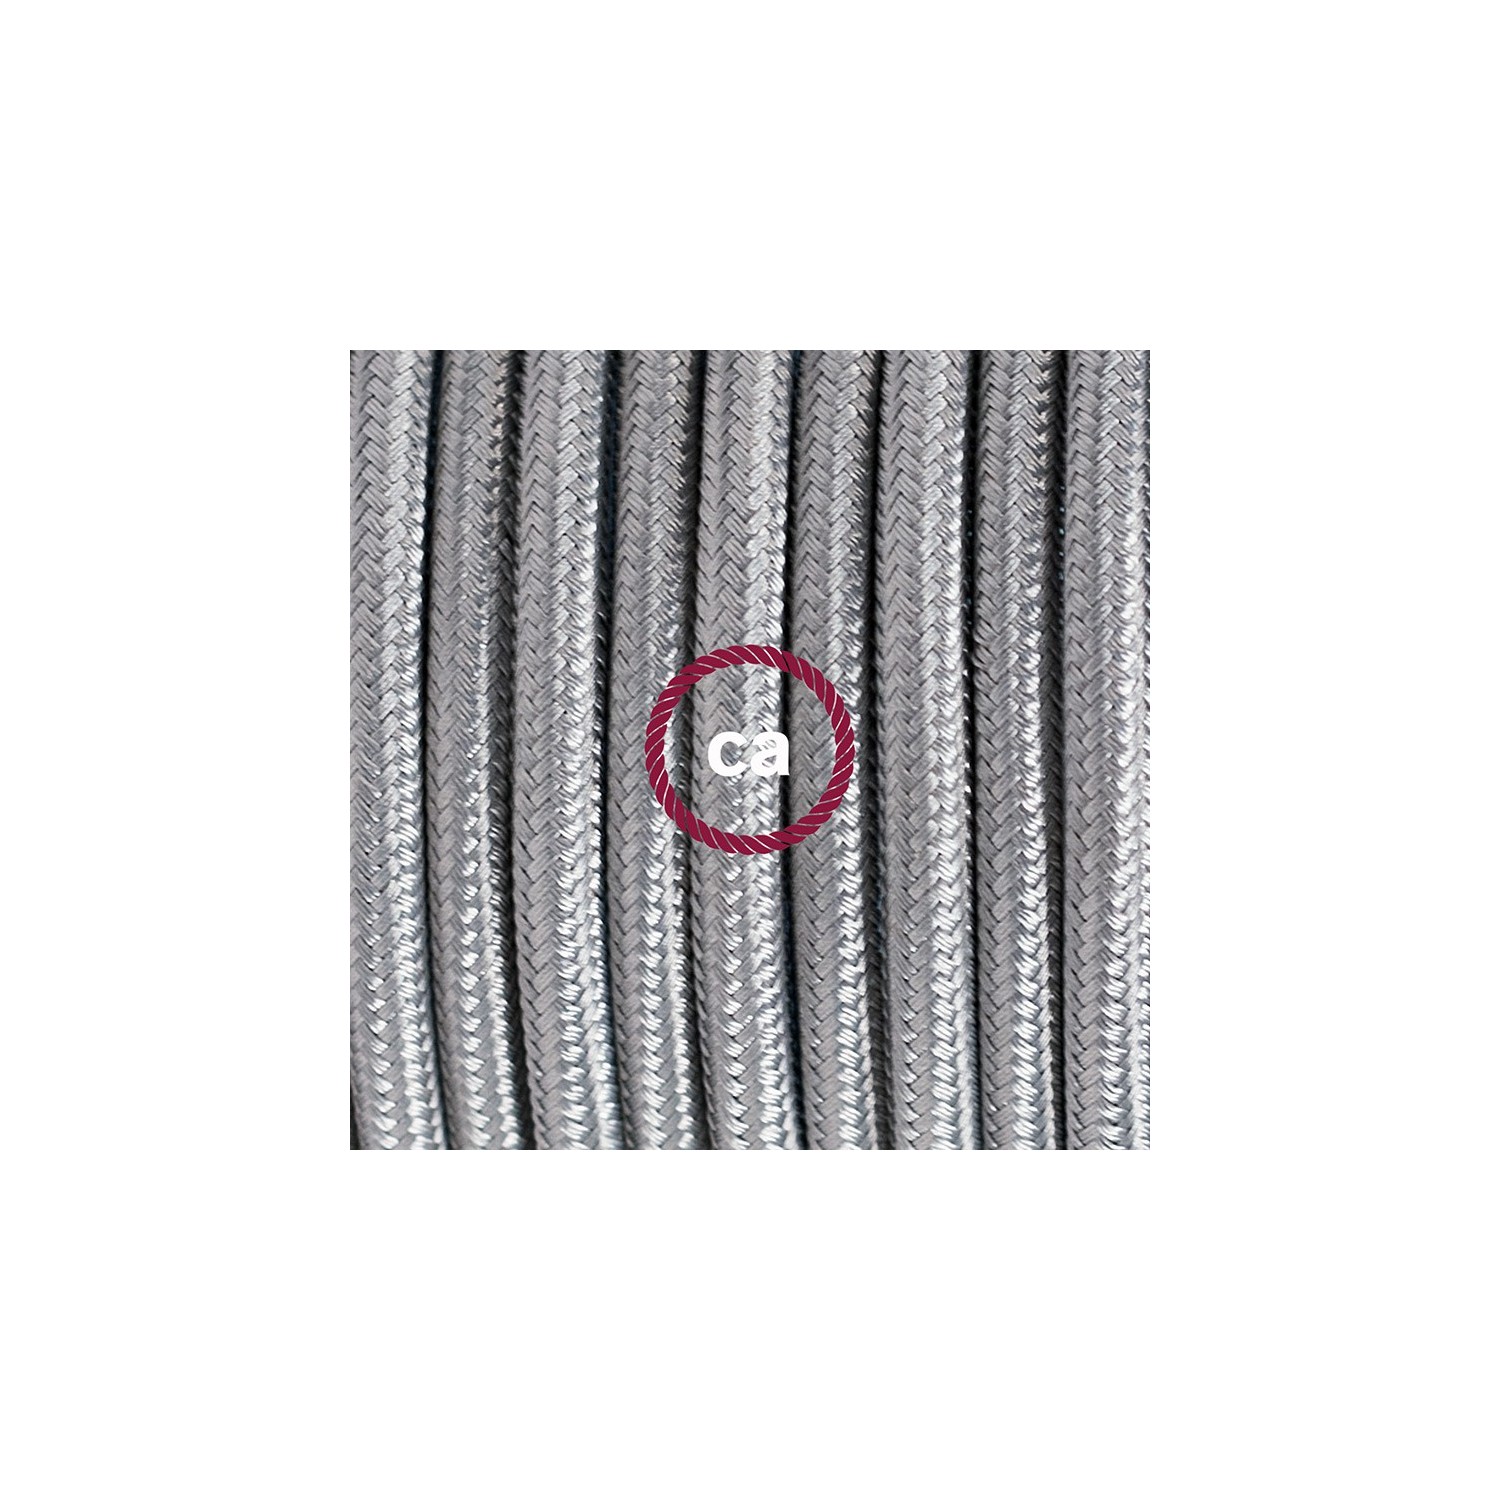 Ronde flexibele textielkabel van viscose met schakelaar en stekker. RM02 - zilver 1,80 m.